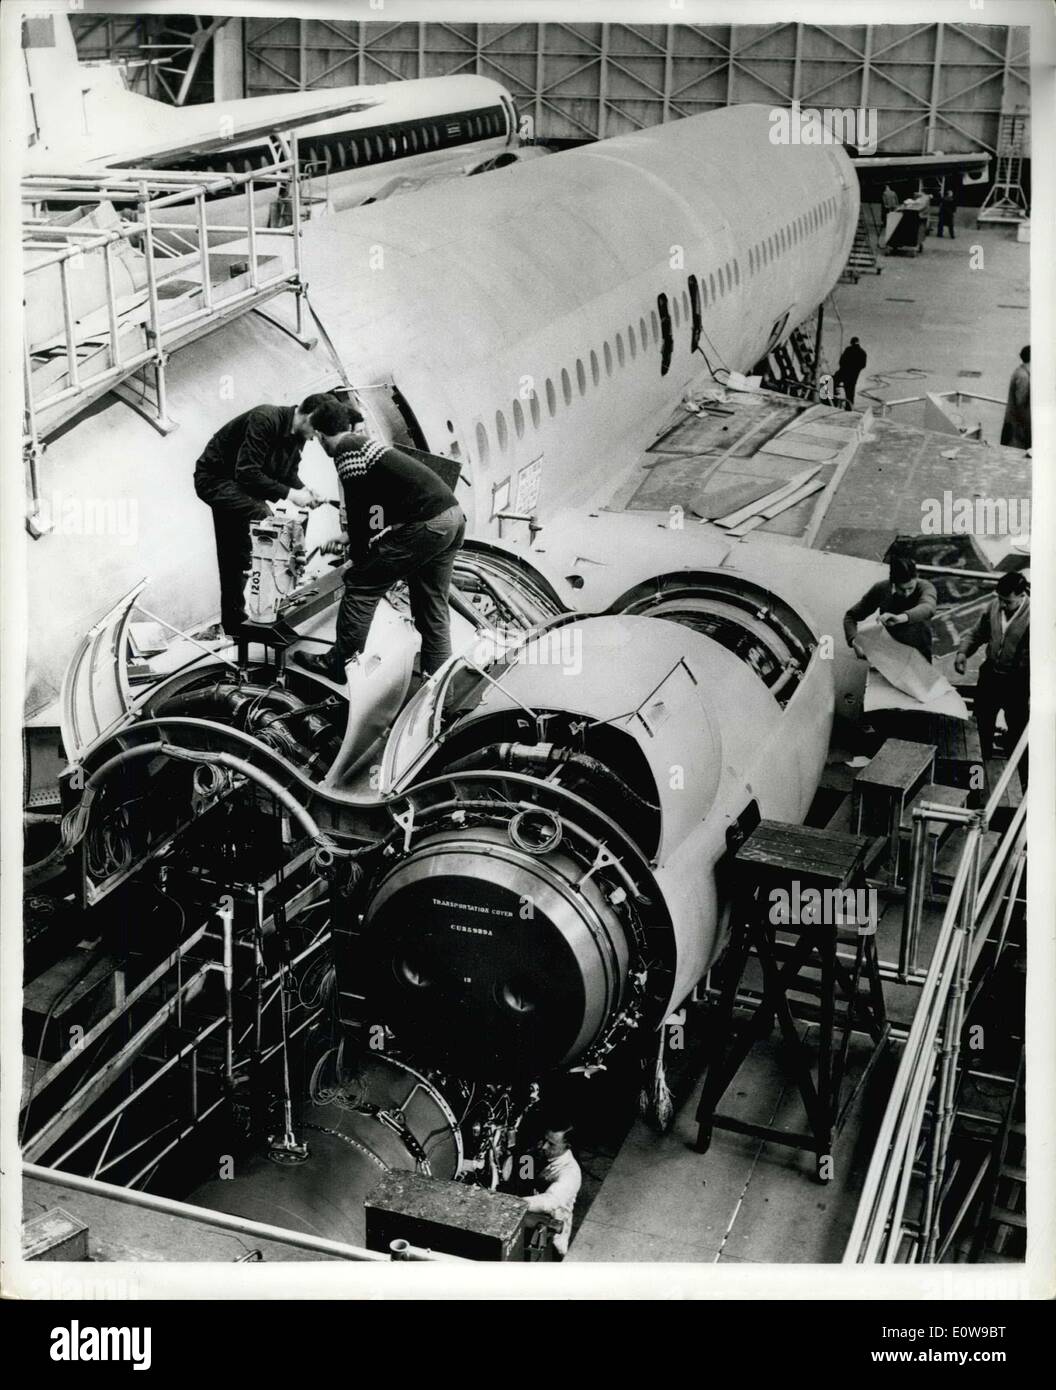 Febbraio 08, 1962 - La Gran Bretagna è di nuovo aria gigante: Viceker's VC 10 - il più grande aereo jet mai costruita in Europa - è in via di completamento a Weybridge, Surrey. Il 600-mph aereo di linea, che possono trasportare fino a 150 passeggeri, dovrebbe essere airborne dalla molla e nel servizio con BOAC dal 1964. I suoi quattro getti sono montati lungo la parte posteriore del parafango spabs fusoliera. È 158ft. lungo e l'ala spabs 140ft. La foto mostra: due del VC 10'quattro getti montata la parte posteriore della fusoliera di aprire dei giganti in costruzione a Weybridge. Foto Stock